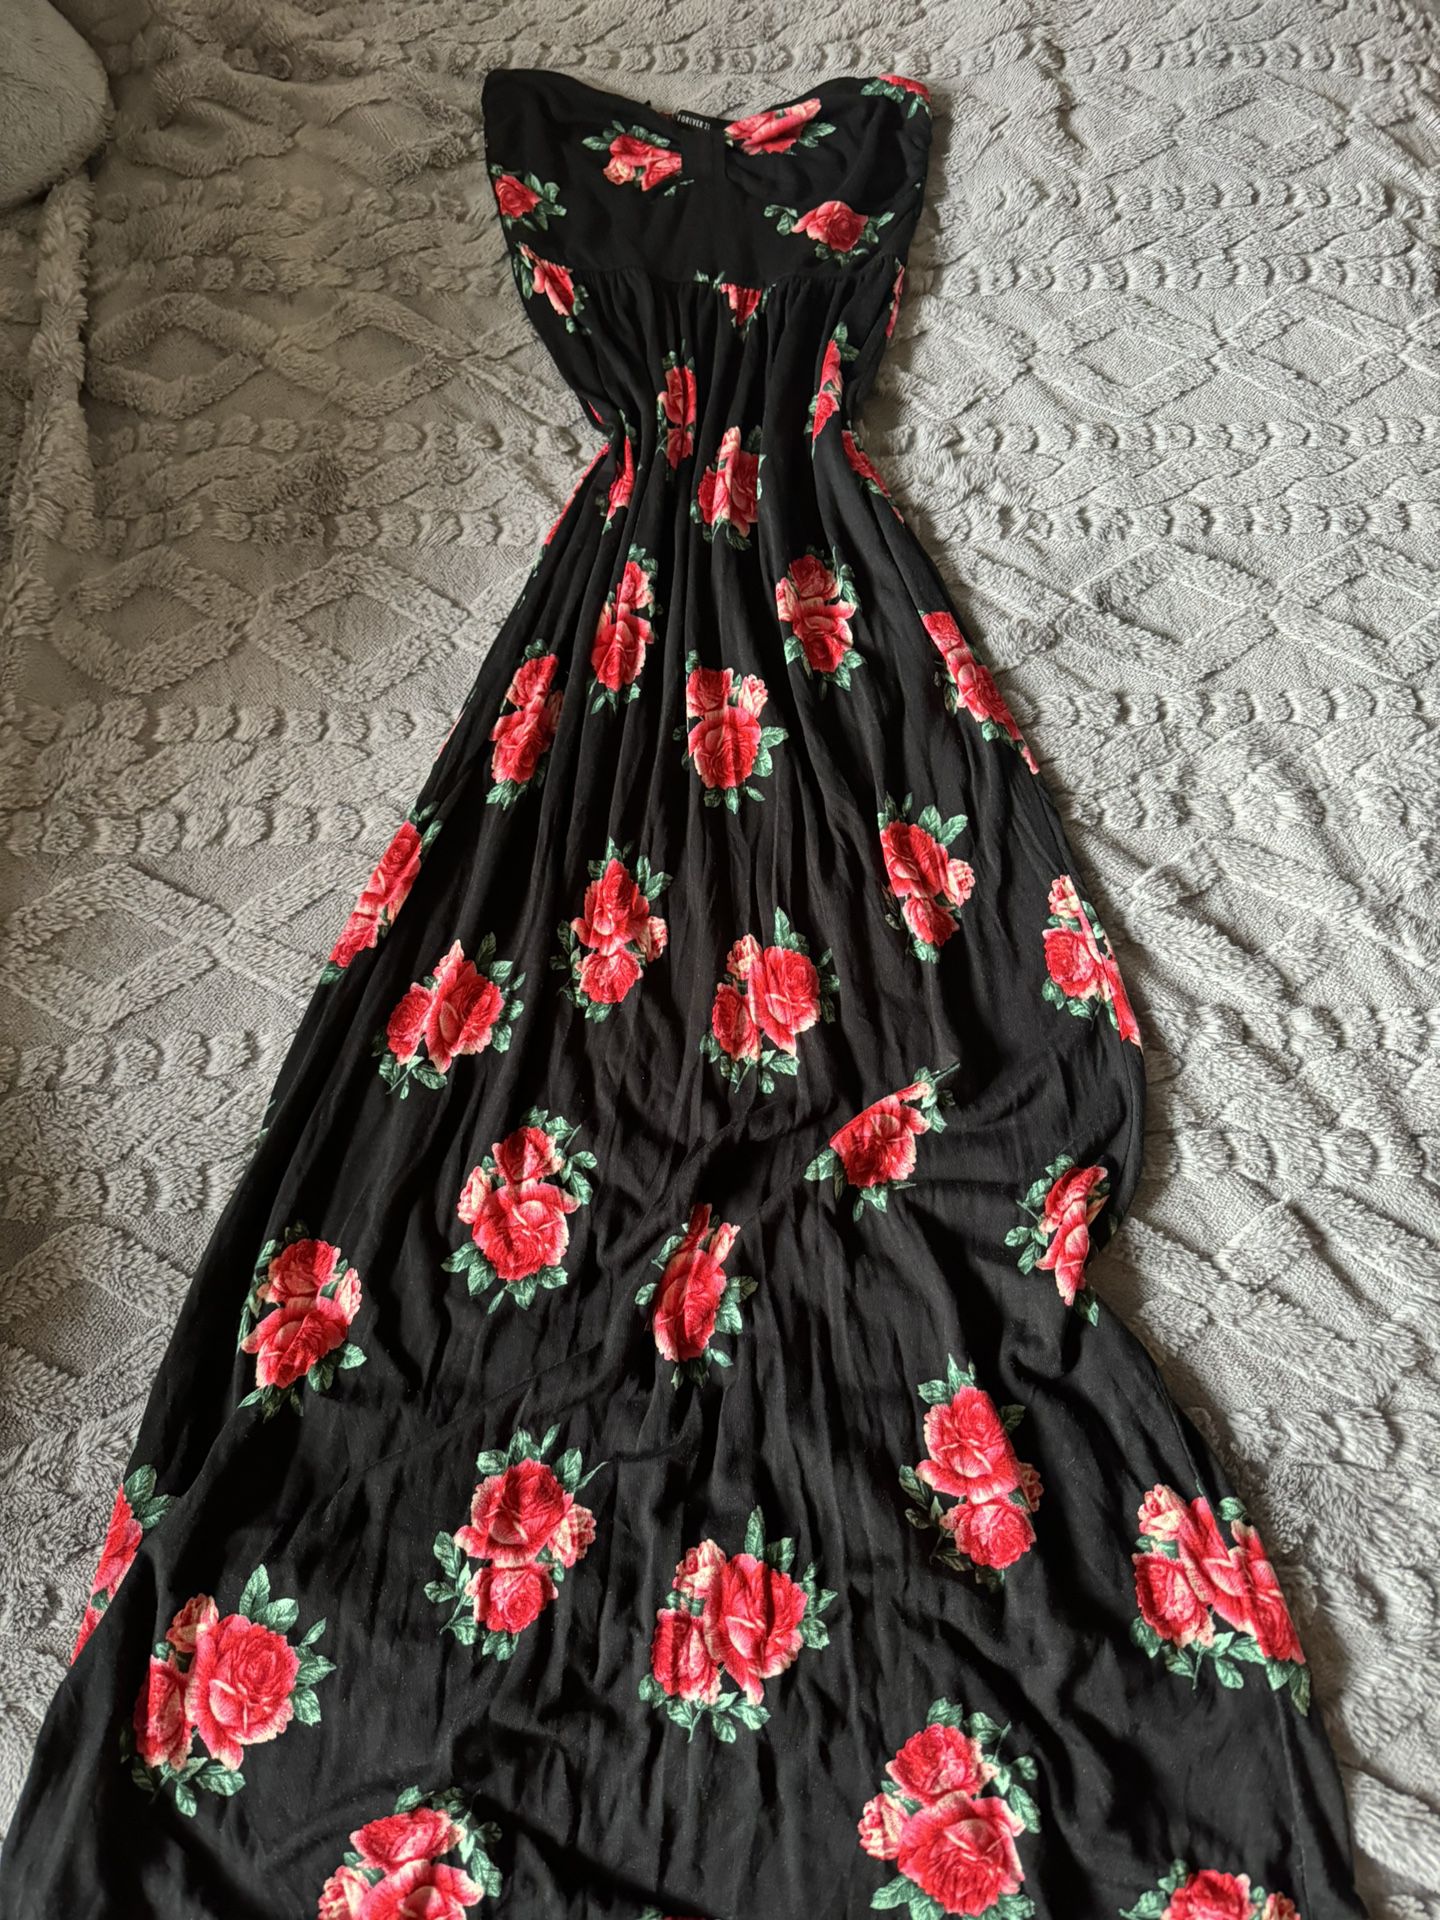 Vintage Black Floral Tube Dress Summer Long Casual